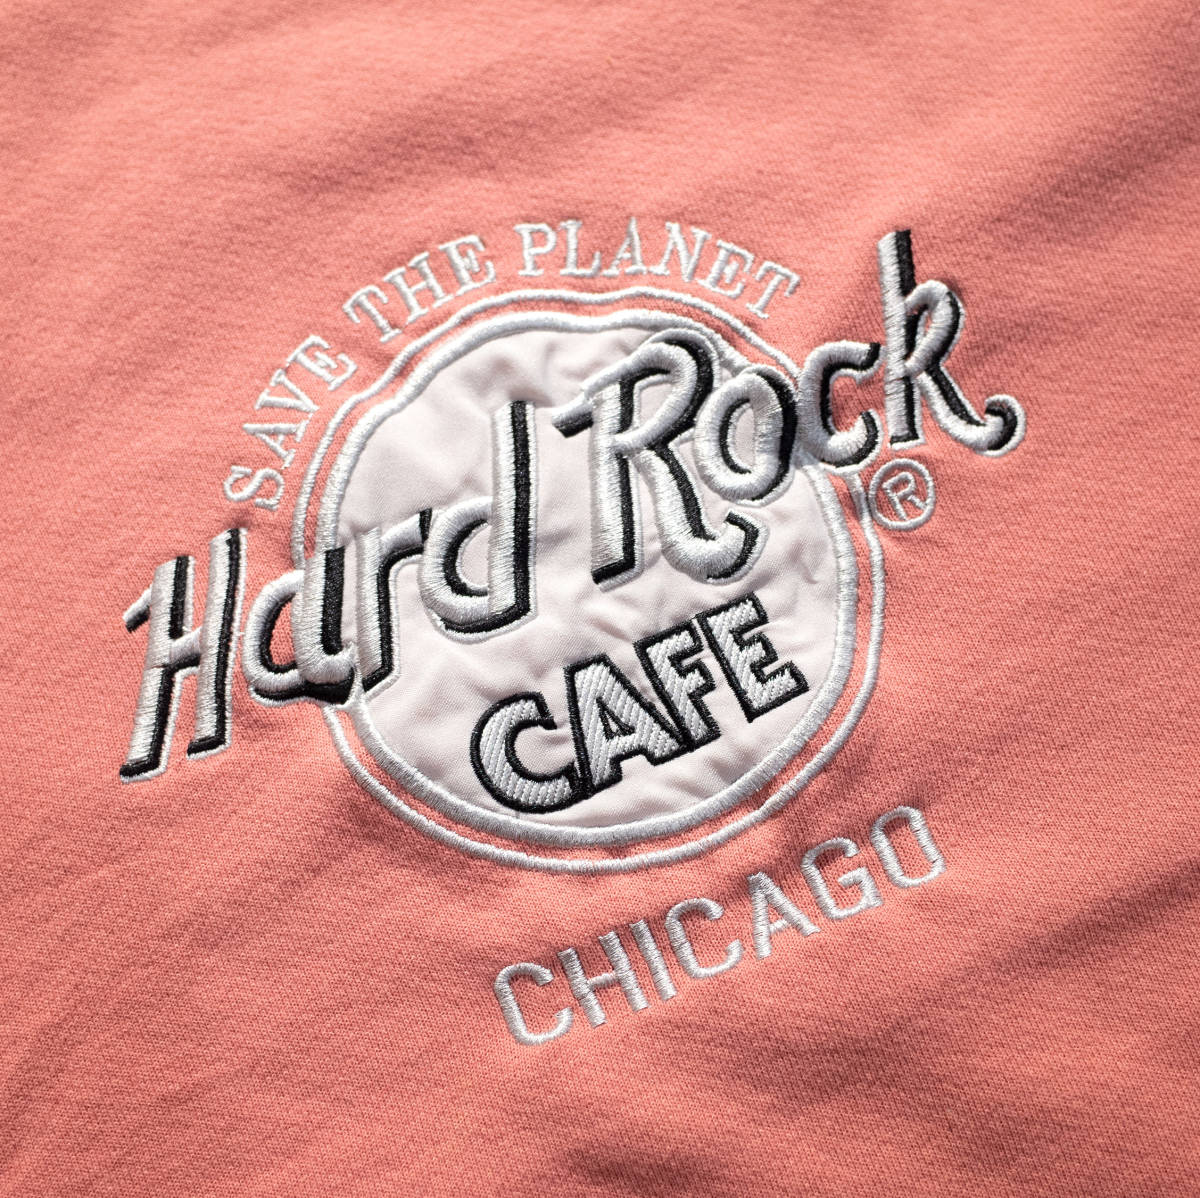 XL / USA製 ハードロックカフェ HARD ROCK CAFE シカゴ 銀刺繍 デカロゴ クルーネック スウェット サーモンピンク くすみ  トレーナー